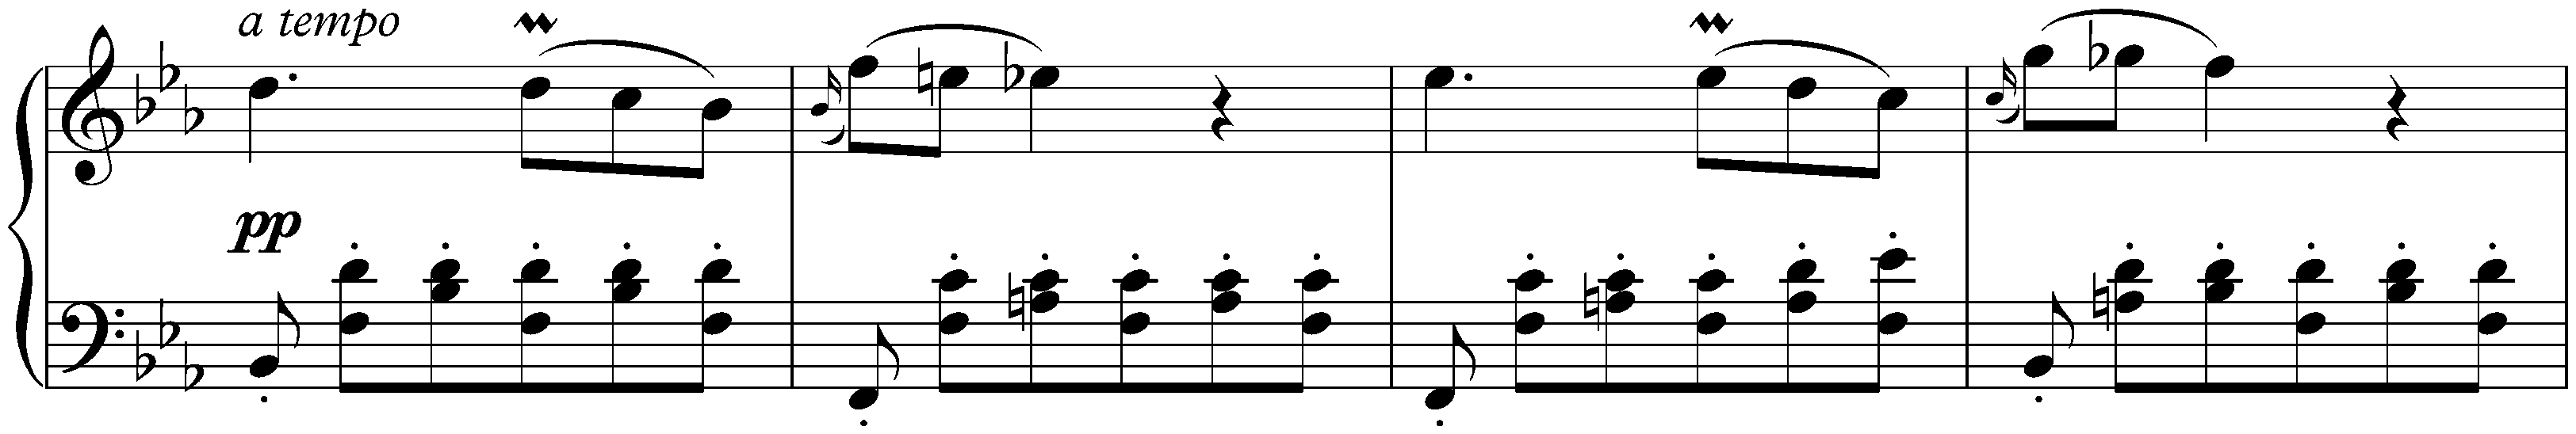 Sonata in E-flat major, D 568; 1. Allegro moderato